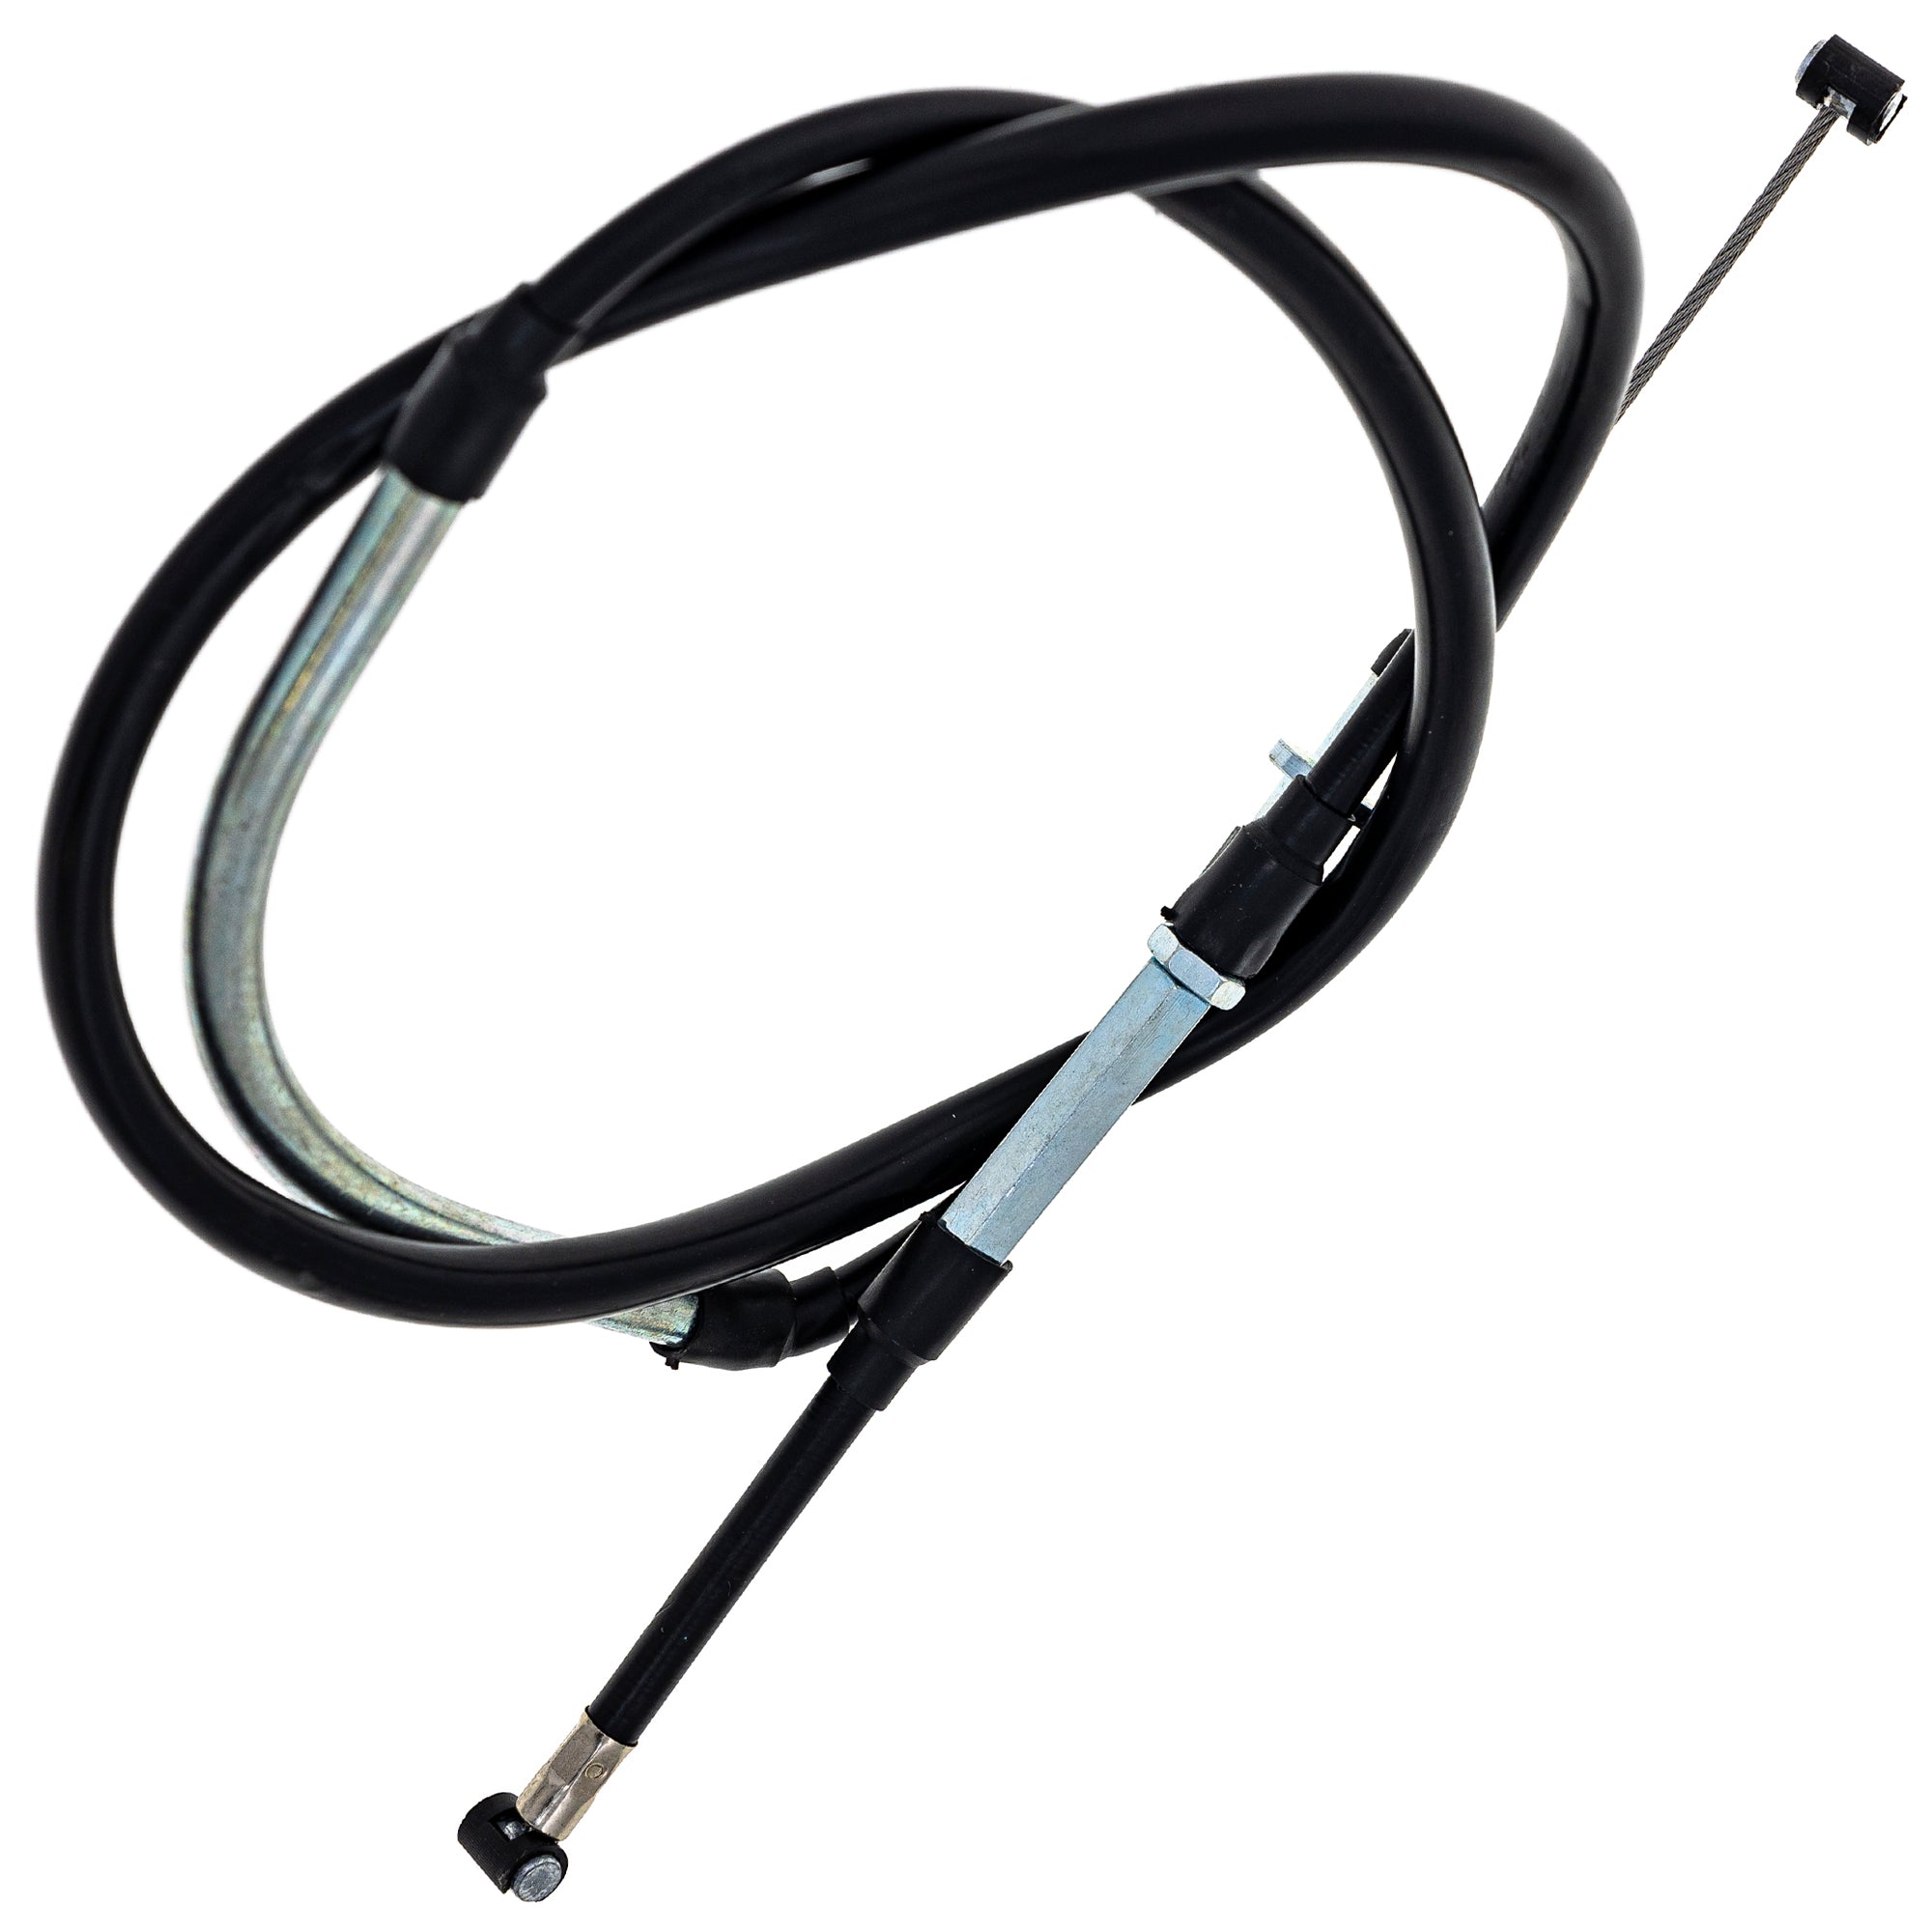 Clutch Cable For Suzuki Kawasaki K5401-10037 54011-0044 54011-0037